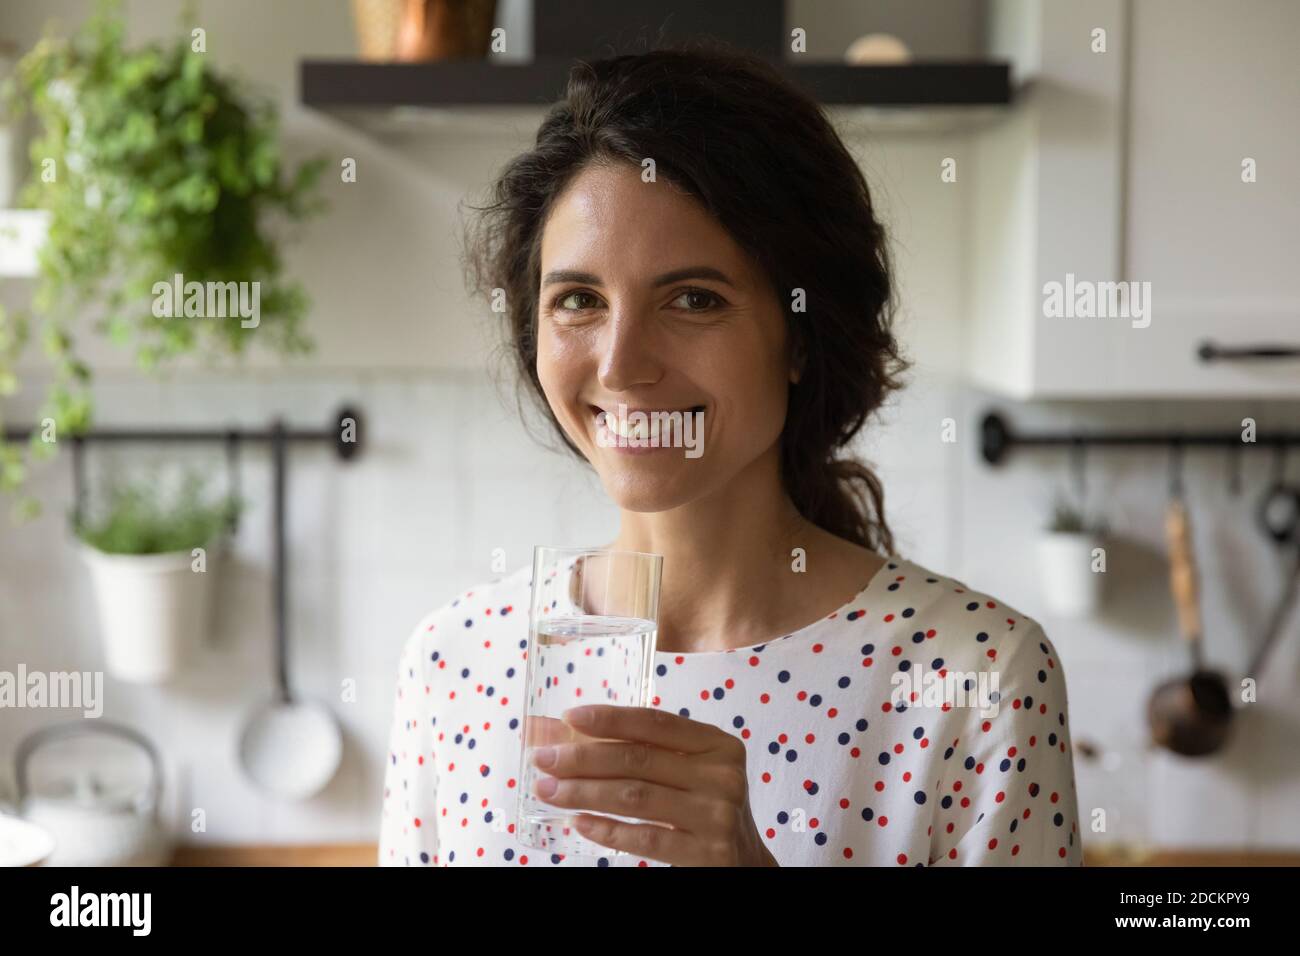 Ritratto di donna sorridente bere acqua pulita Foto Stock